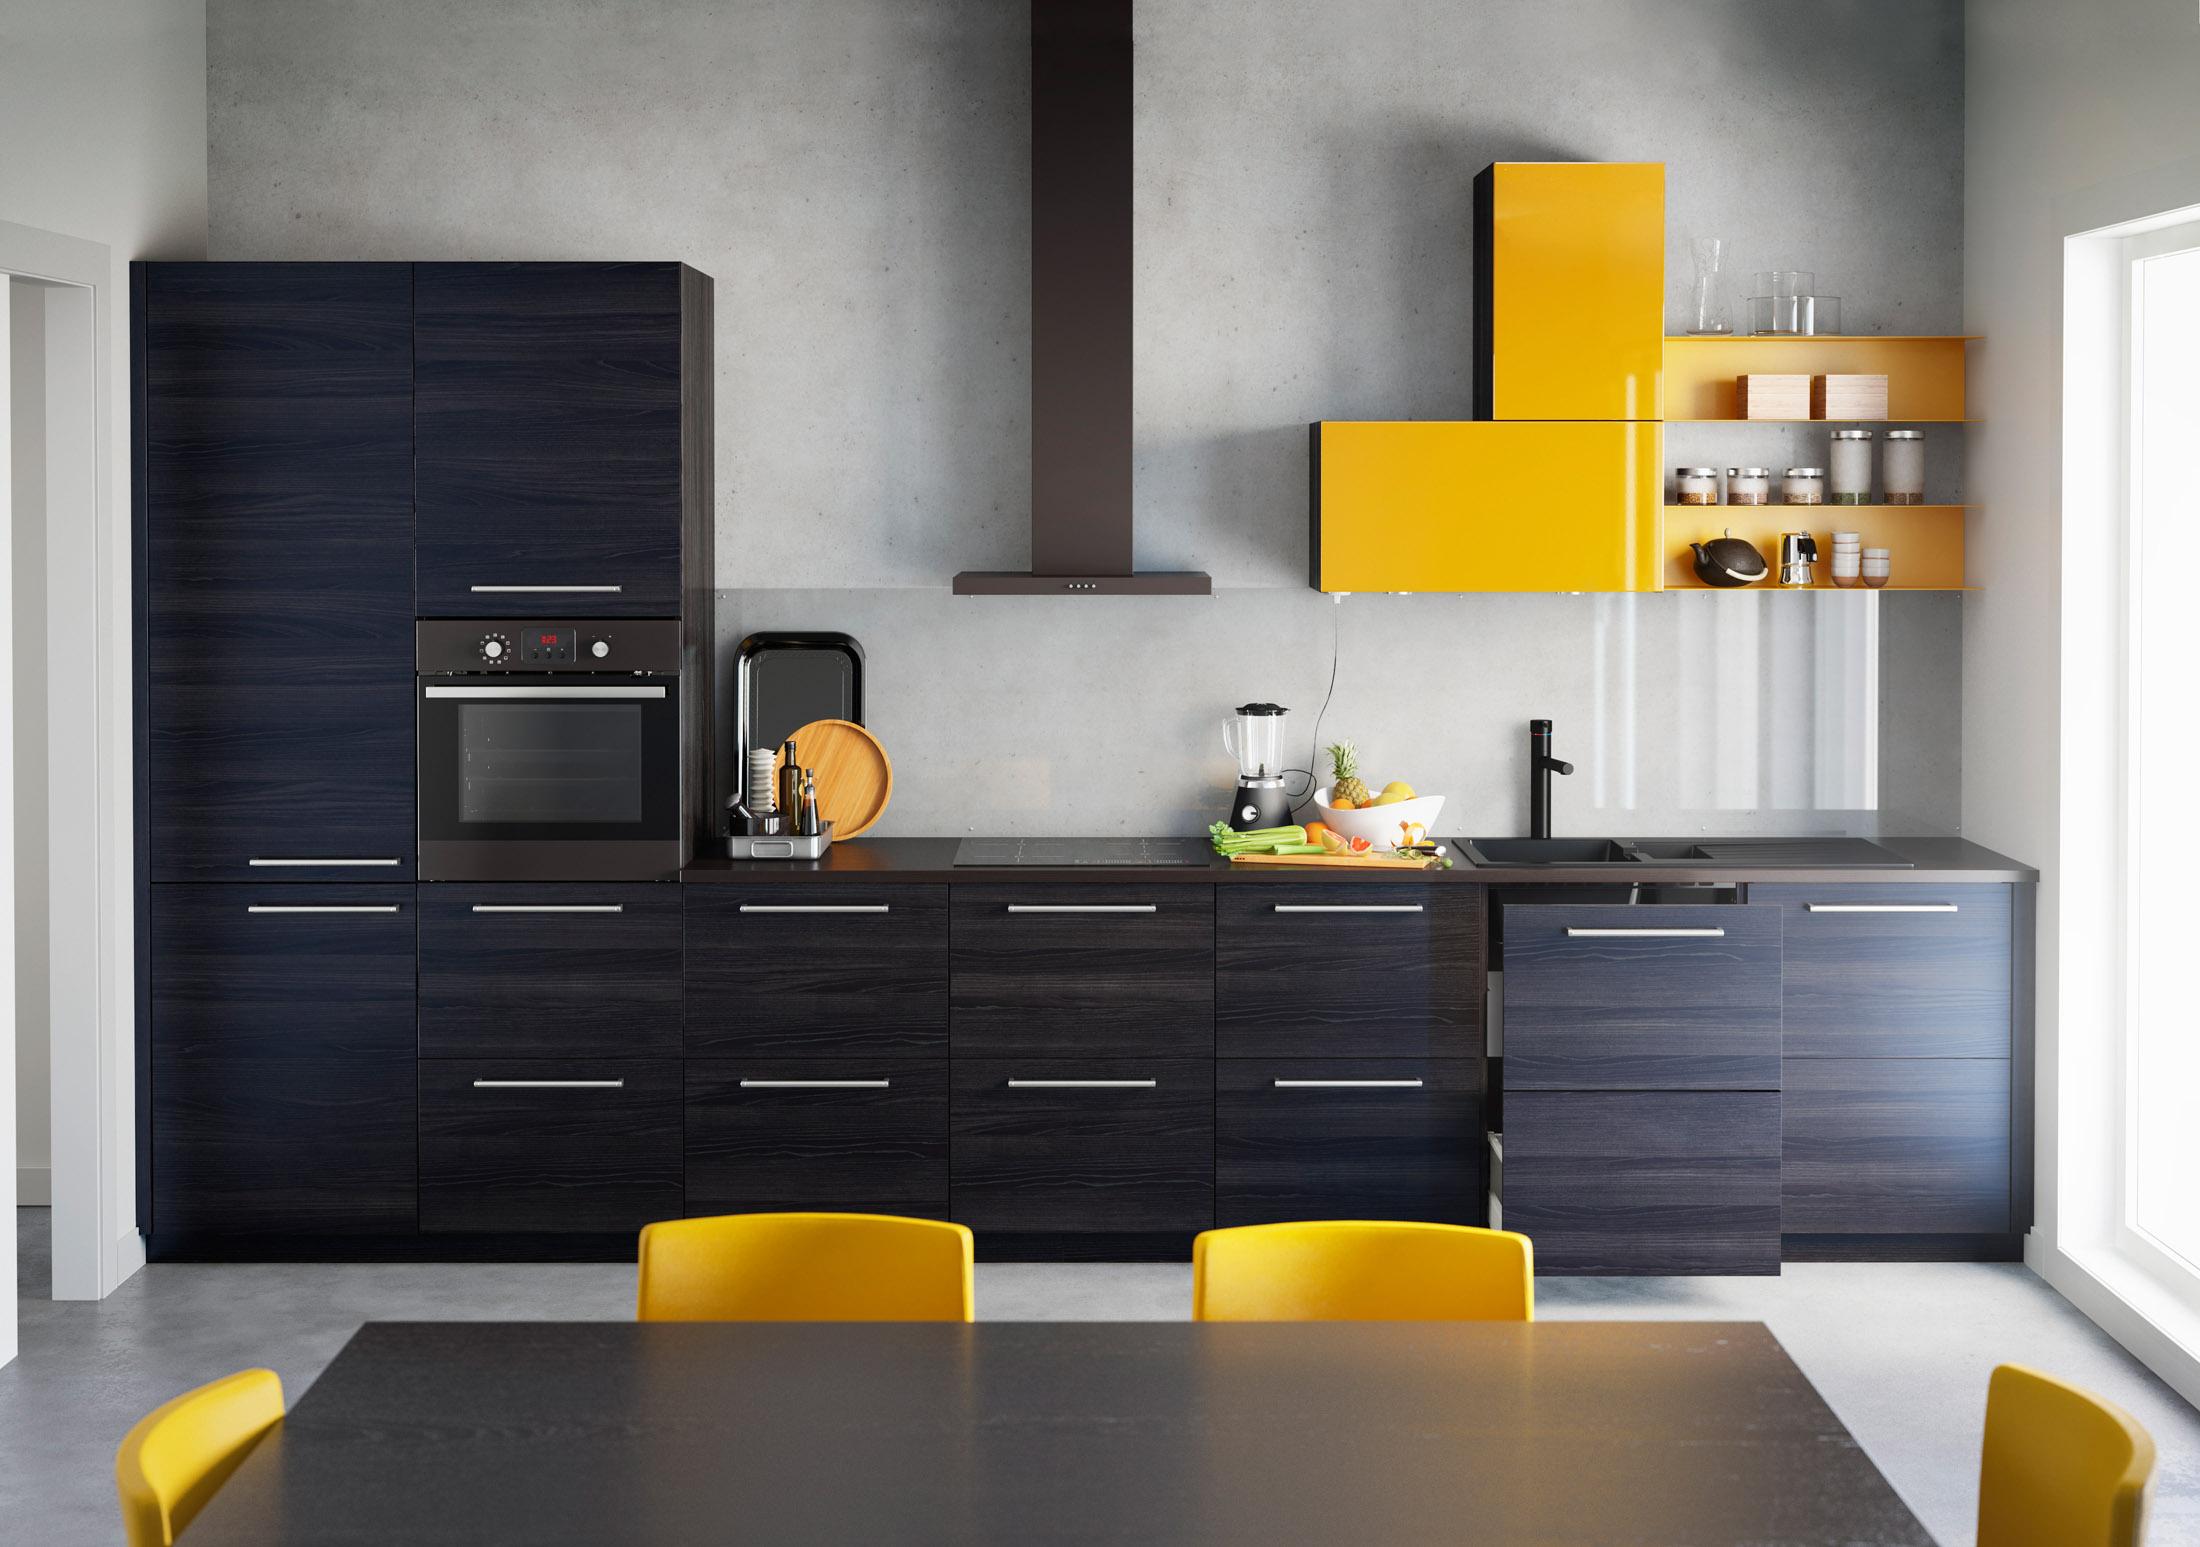 Gelb trifft auf Schwarz #stuhl #küche #ikea ©Inter IKEA Systems B.V. 2014